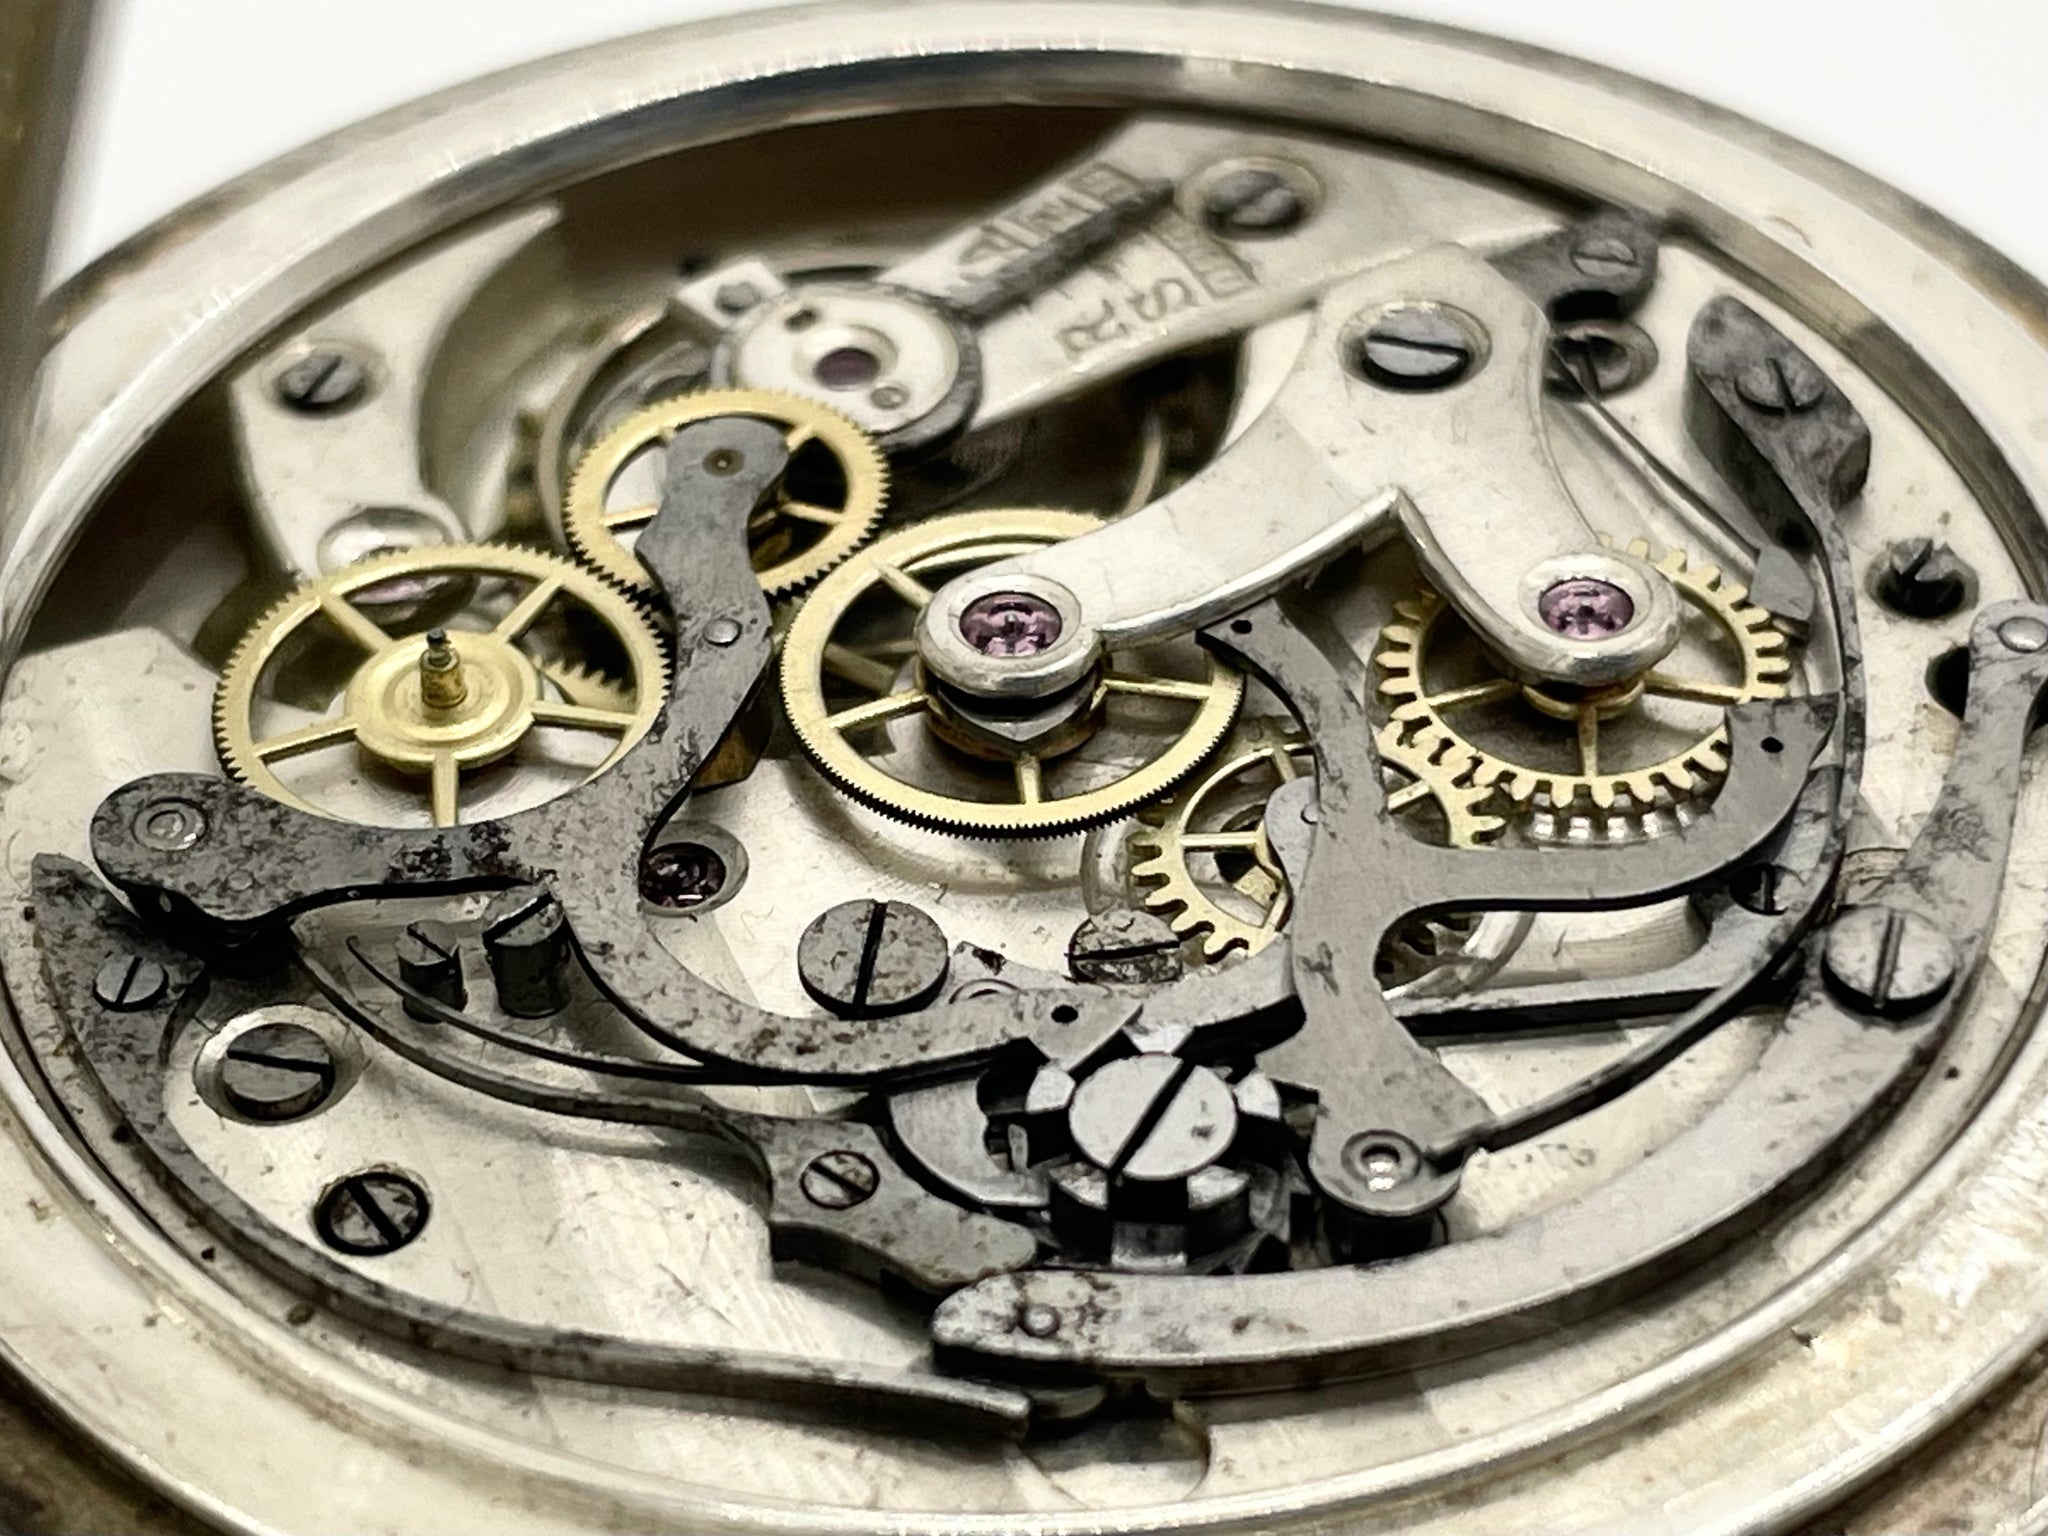 【時計/WATCH】ロレックス クロノグラフ 懐中時計 手巻き コラムホイール式 1920年代頃